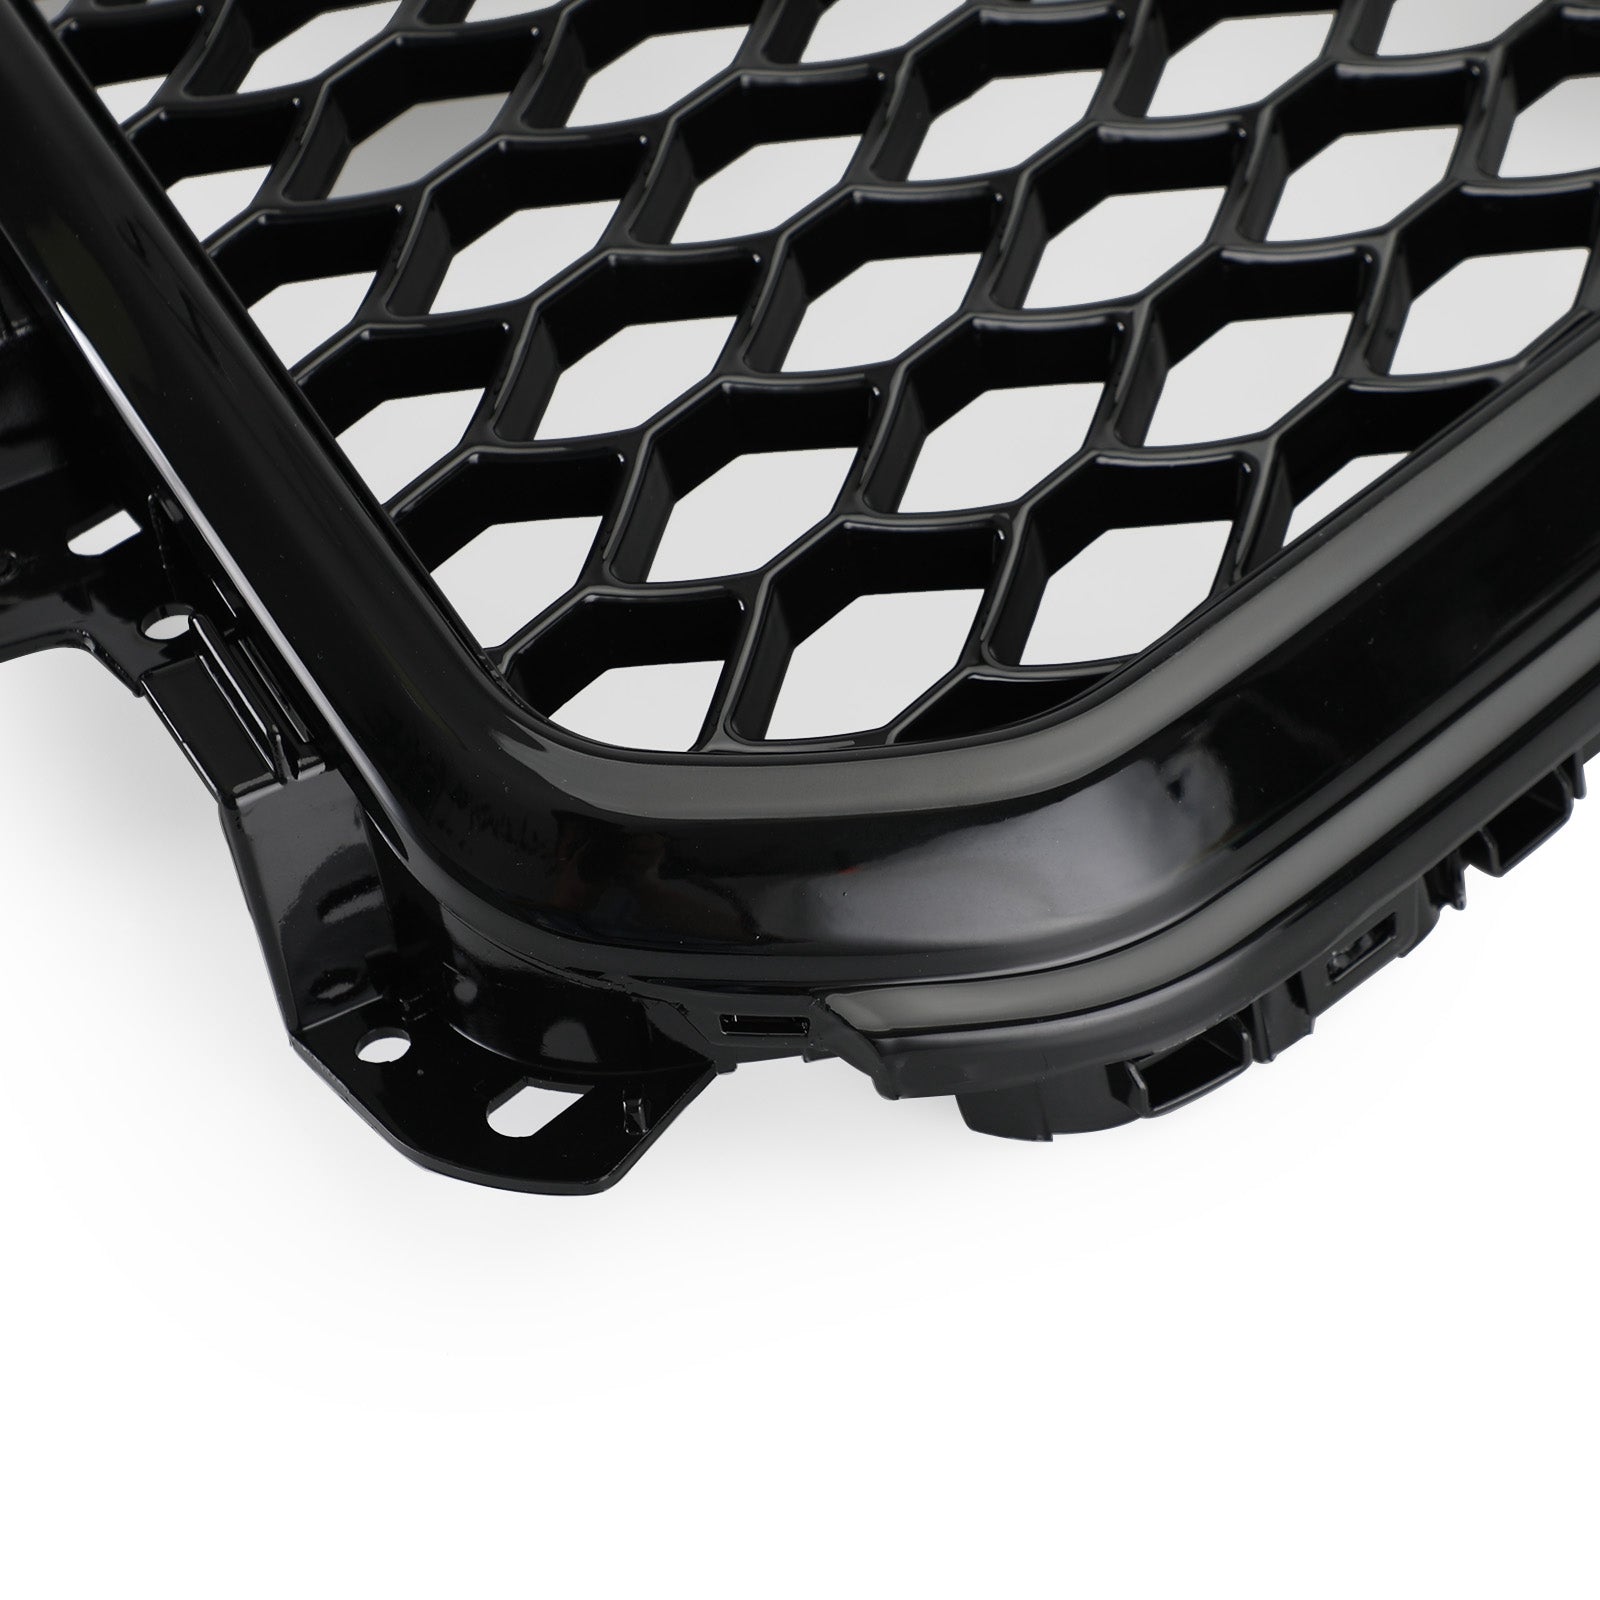 Parrilla hexagonal deportiva de malla de panal estilo RSQ5 compatible con Audi Q5 2013-2017, negro brillante